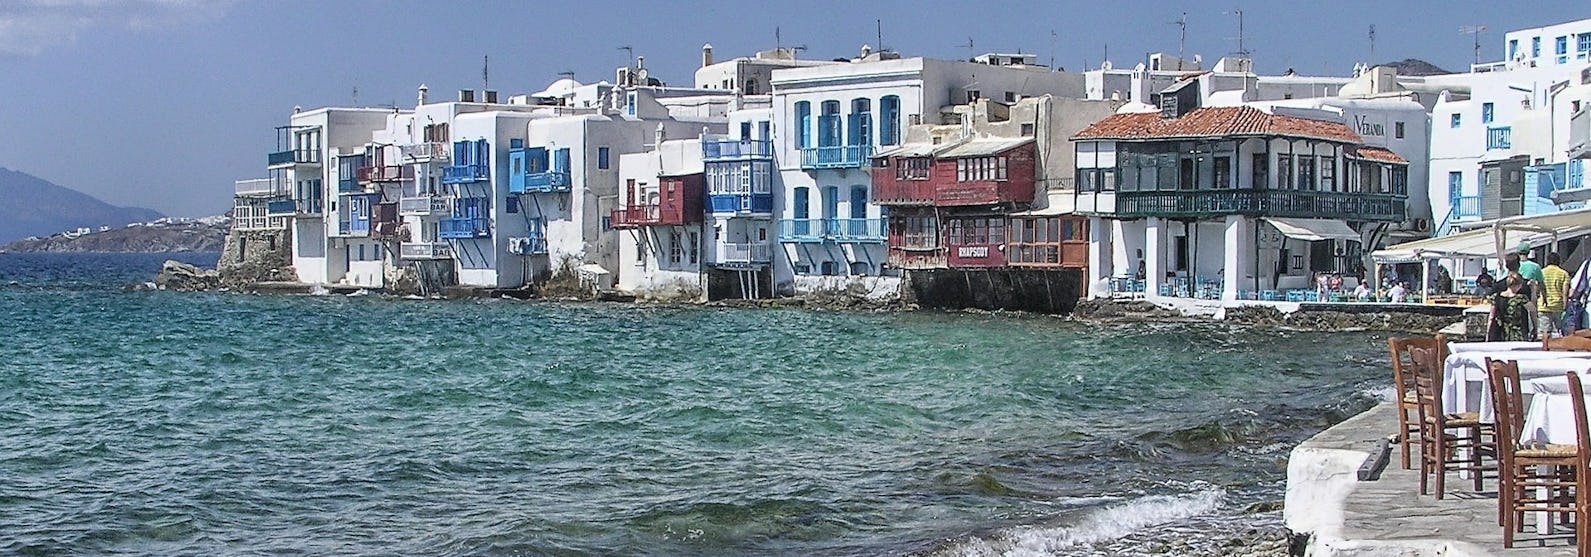 Vågorna slår in mot stranden med färgglada hus runtomkring i Mykonos, Grekland.